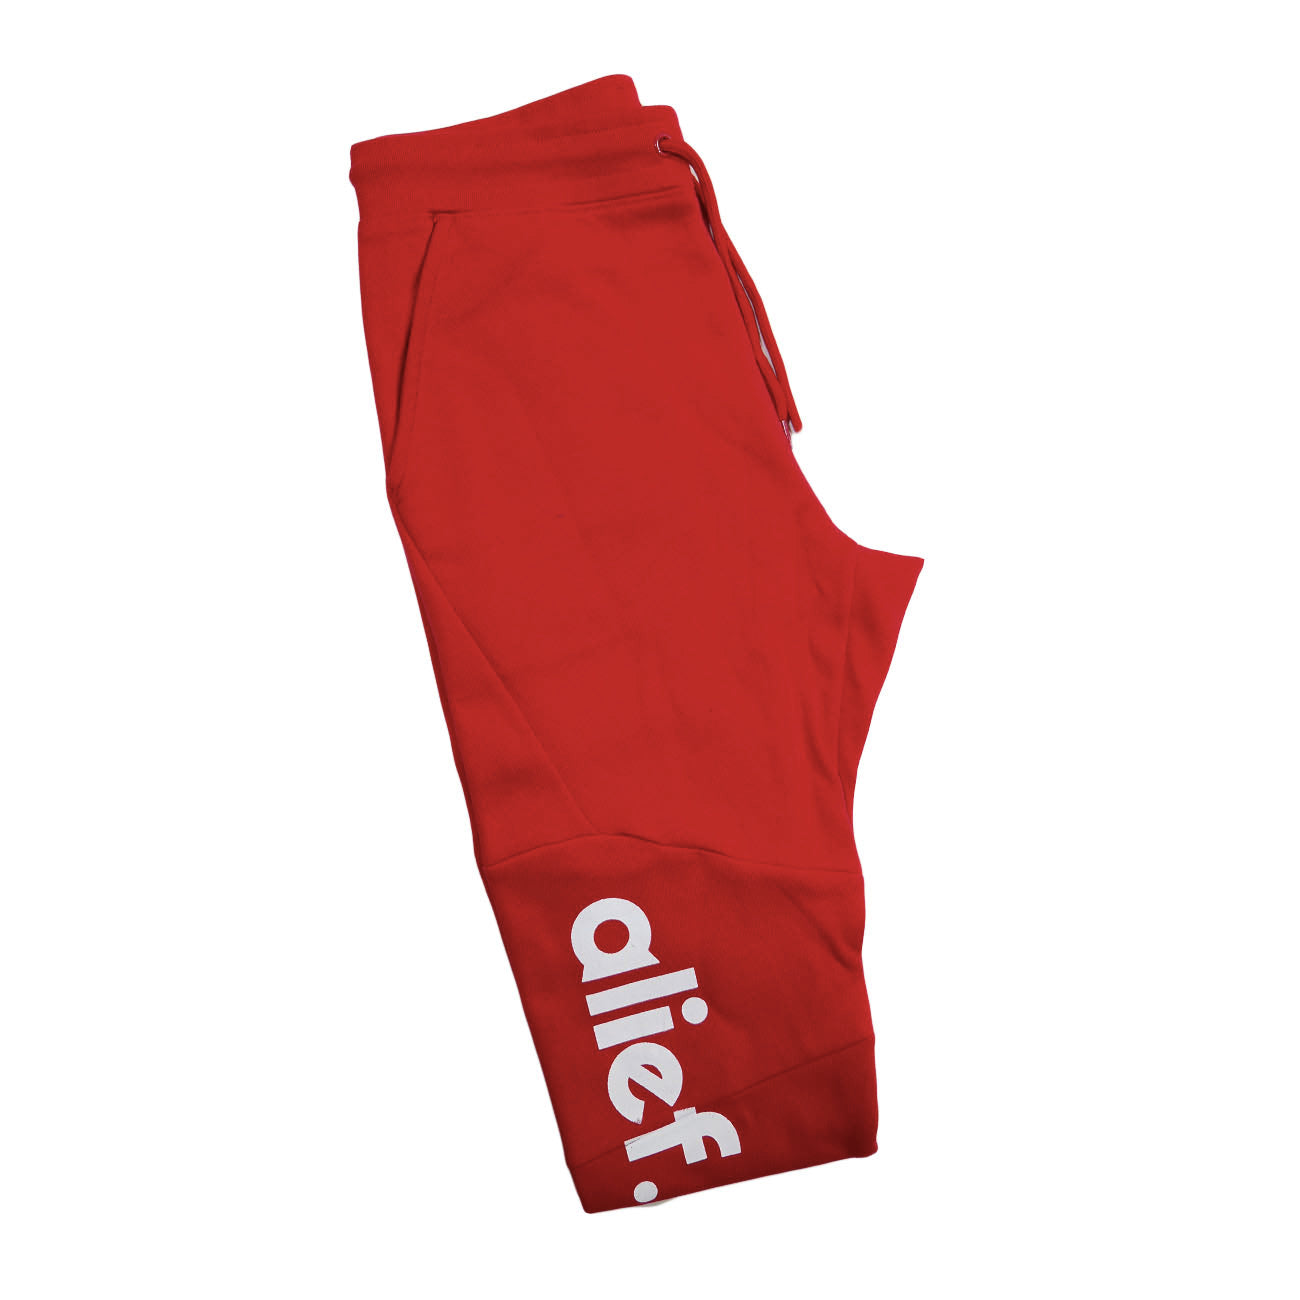 Alief Essential Jumpsuit - Red